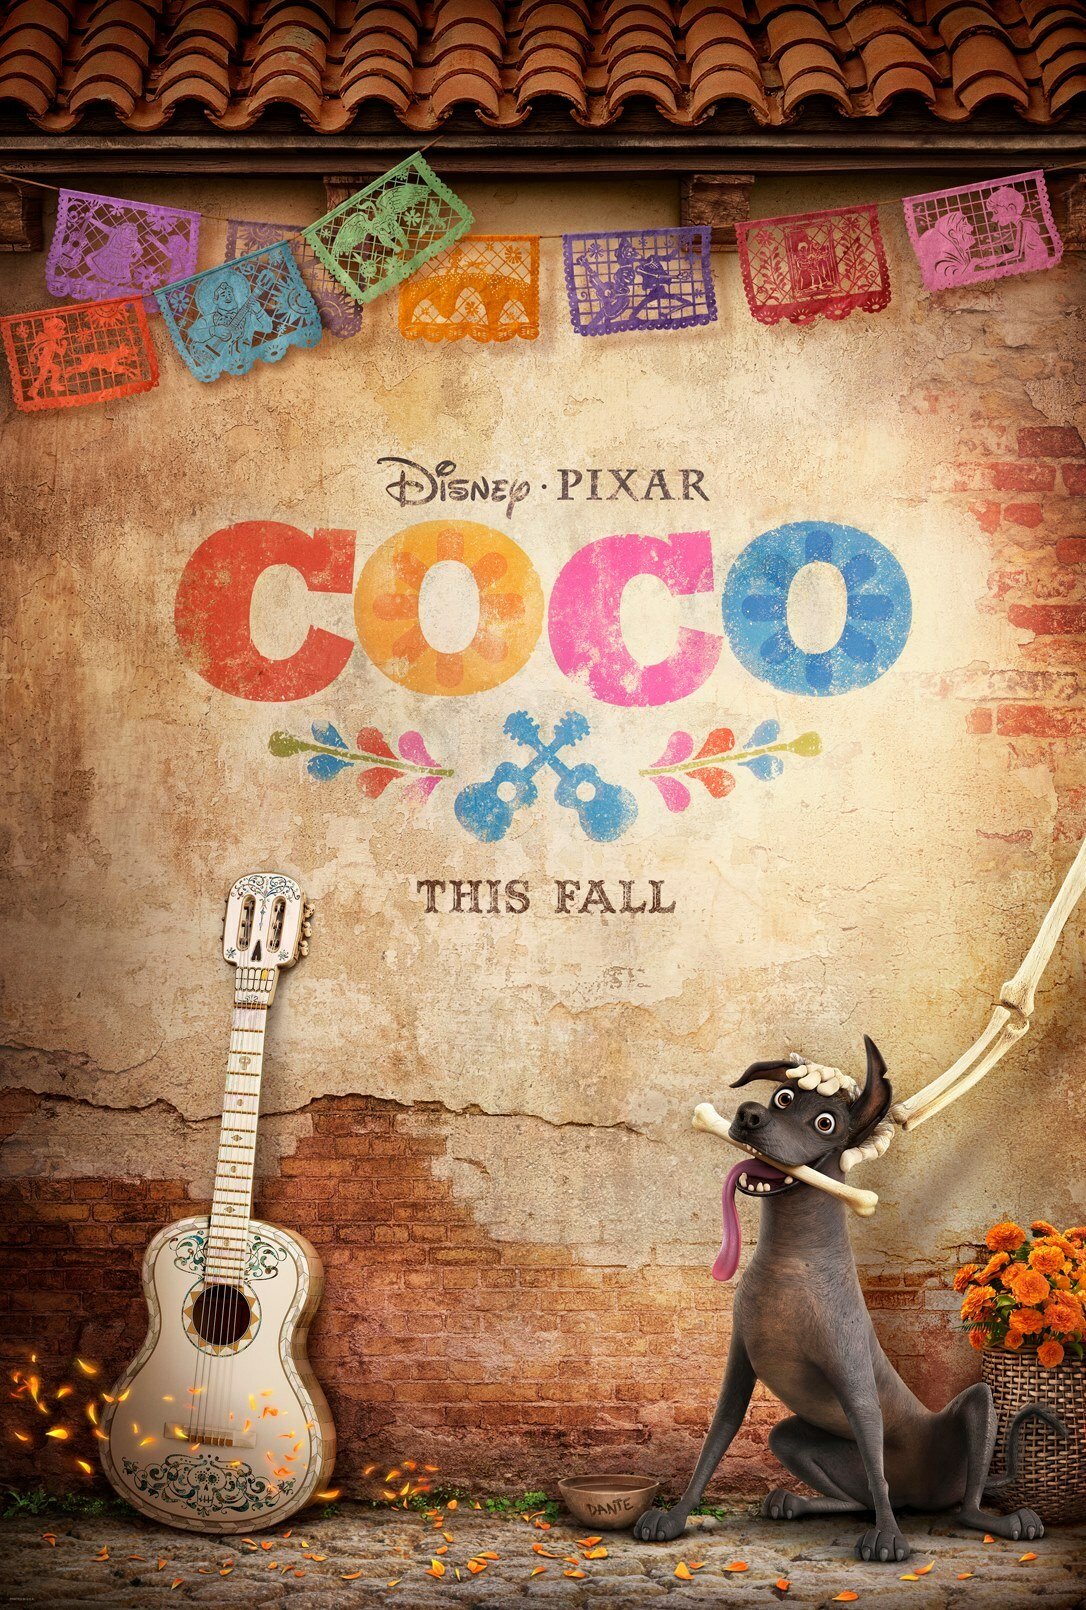 Coco arriverà nell'autunno del 2017